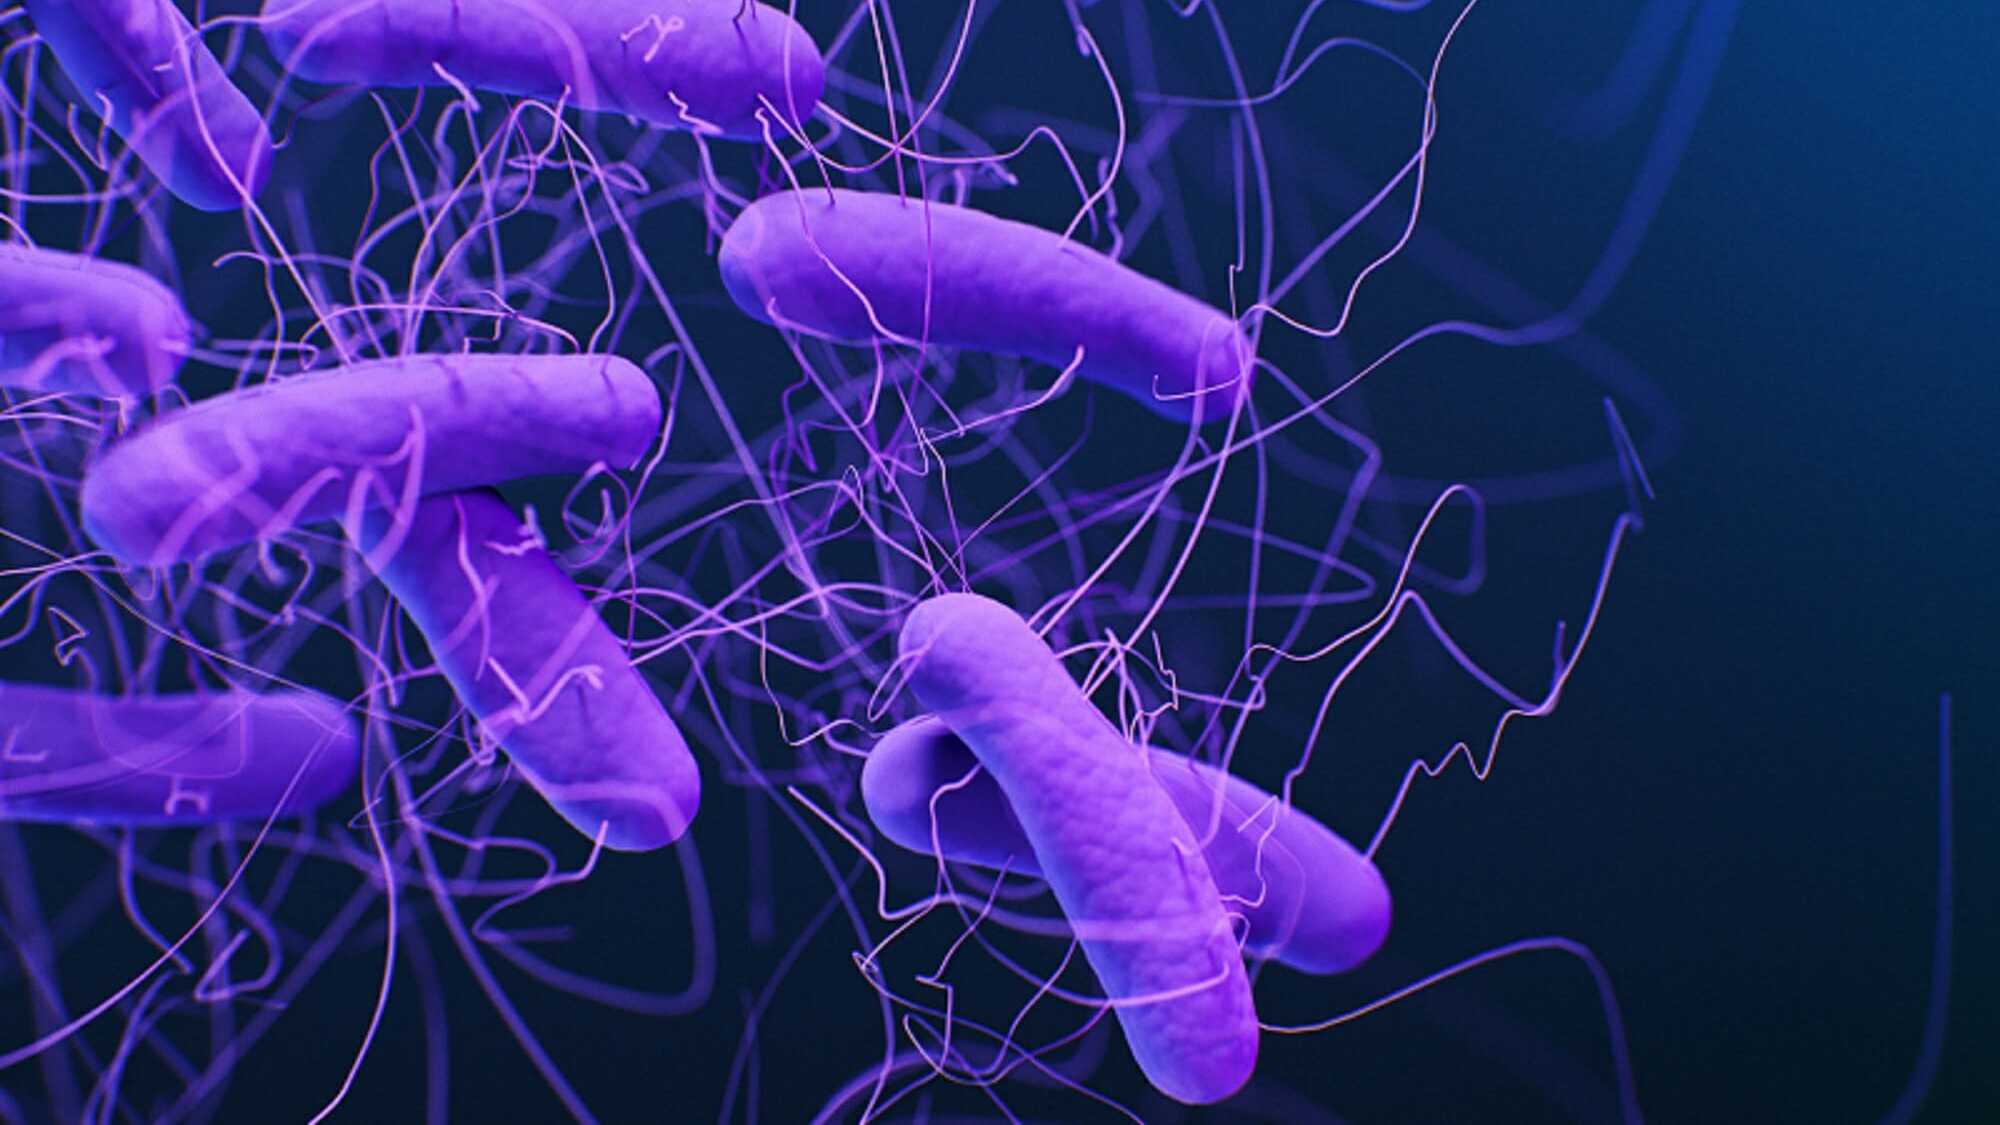 Пересадка кишечной микробиоты оказалась эффективнее антибиотиков при лечении колита